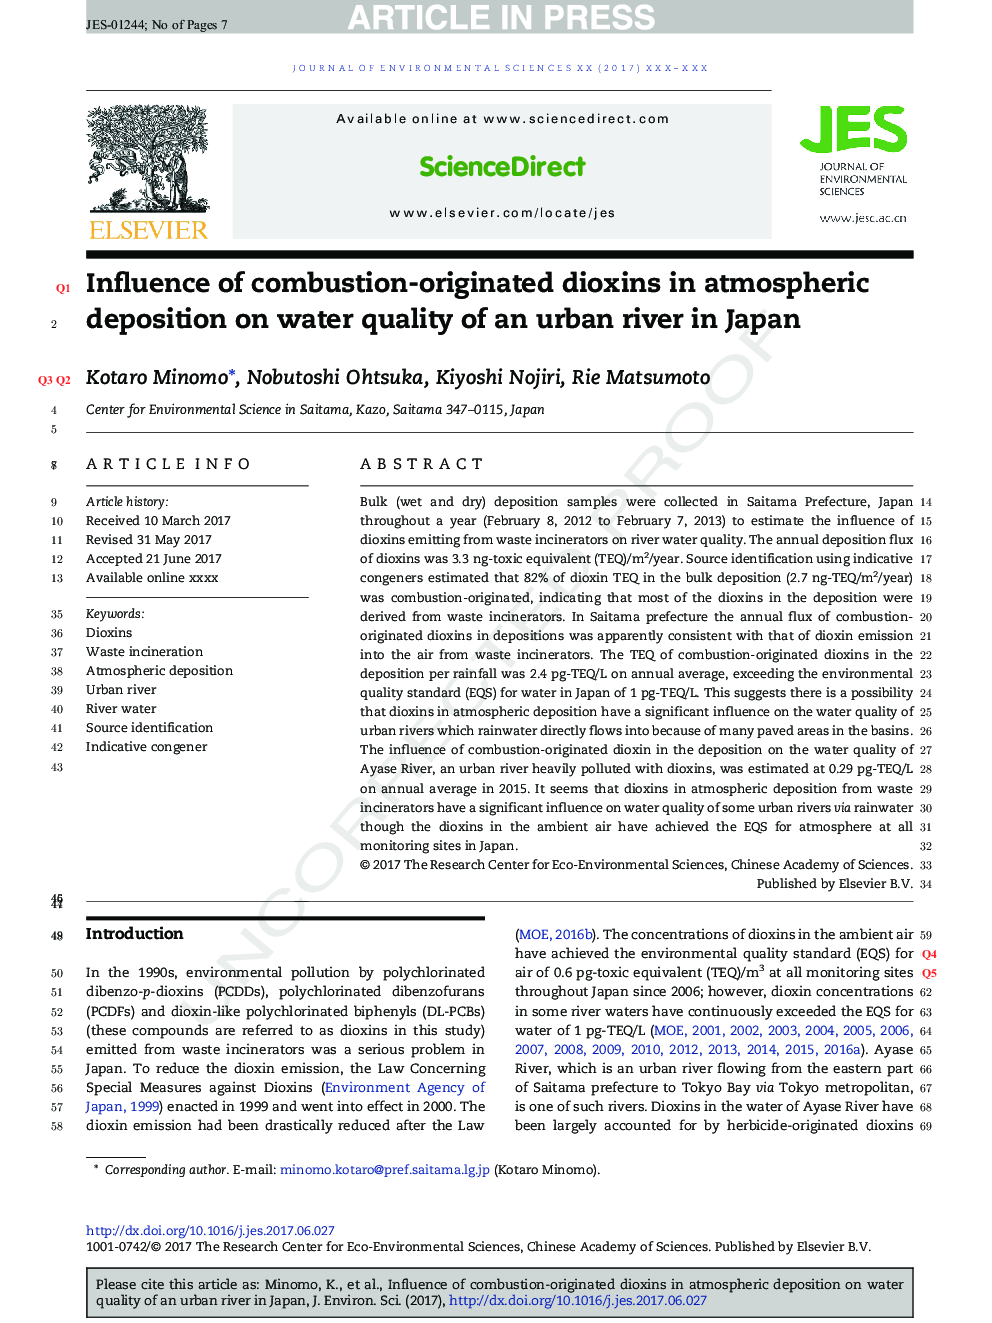 تأثیر دیاکسین های احیا کننده منجر به رسوب جو در کیفیت آب یک رودخانه شهری در ژاپن 